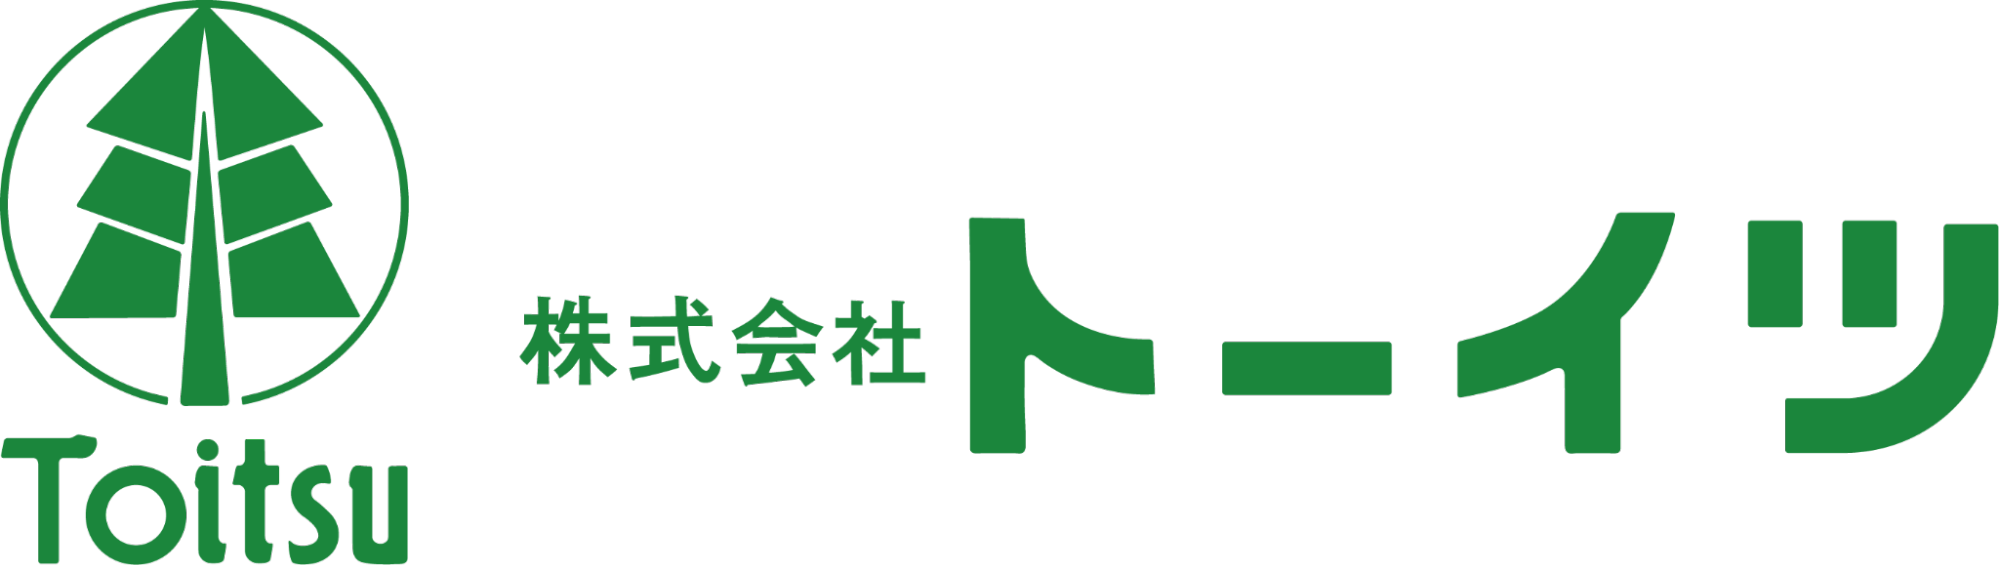 Toytsu Logo